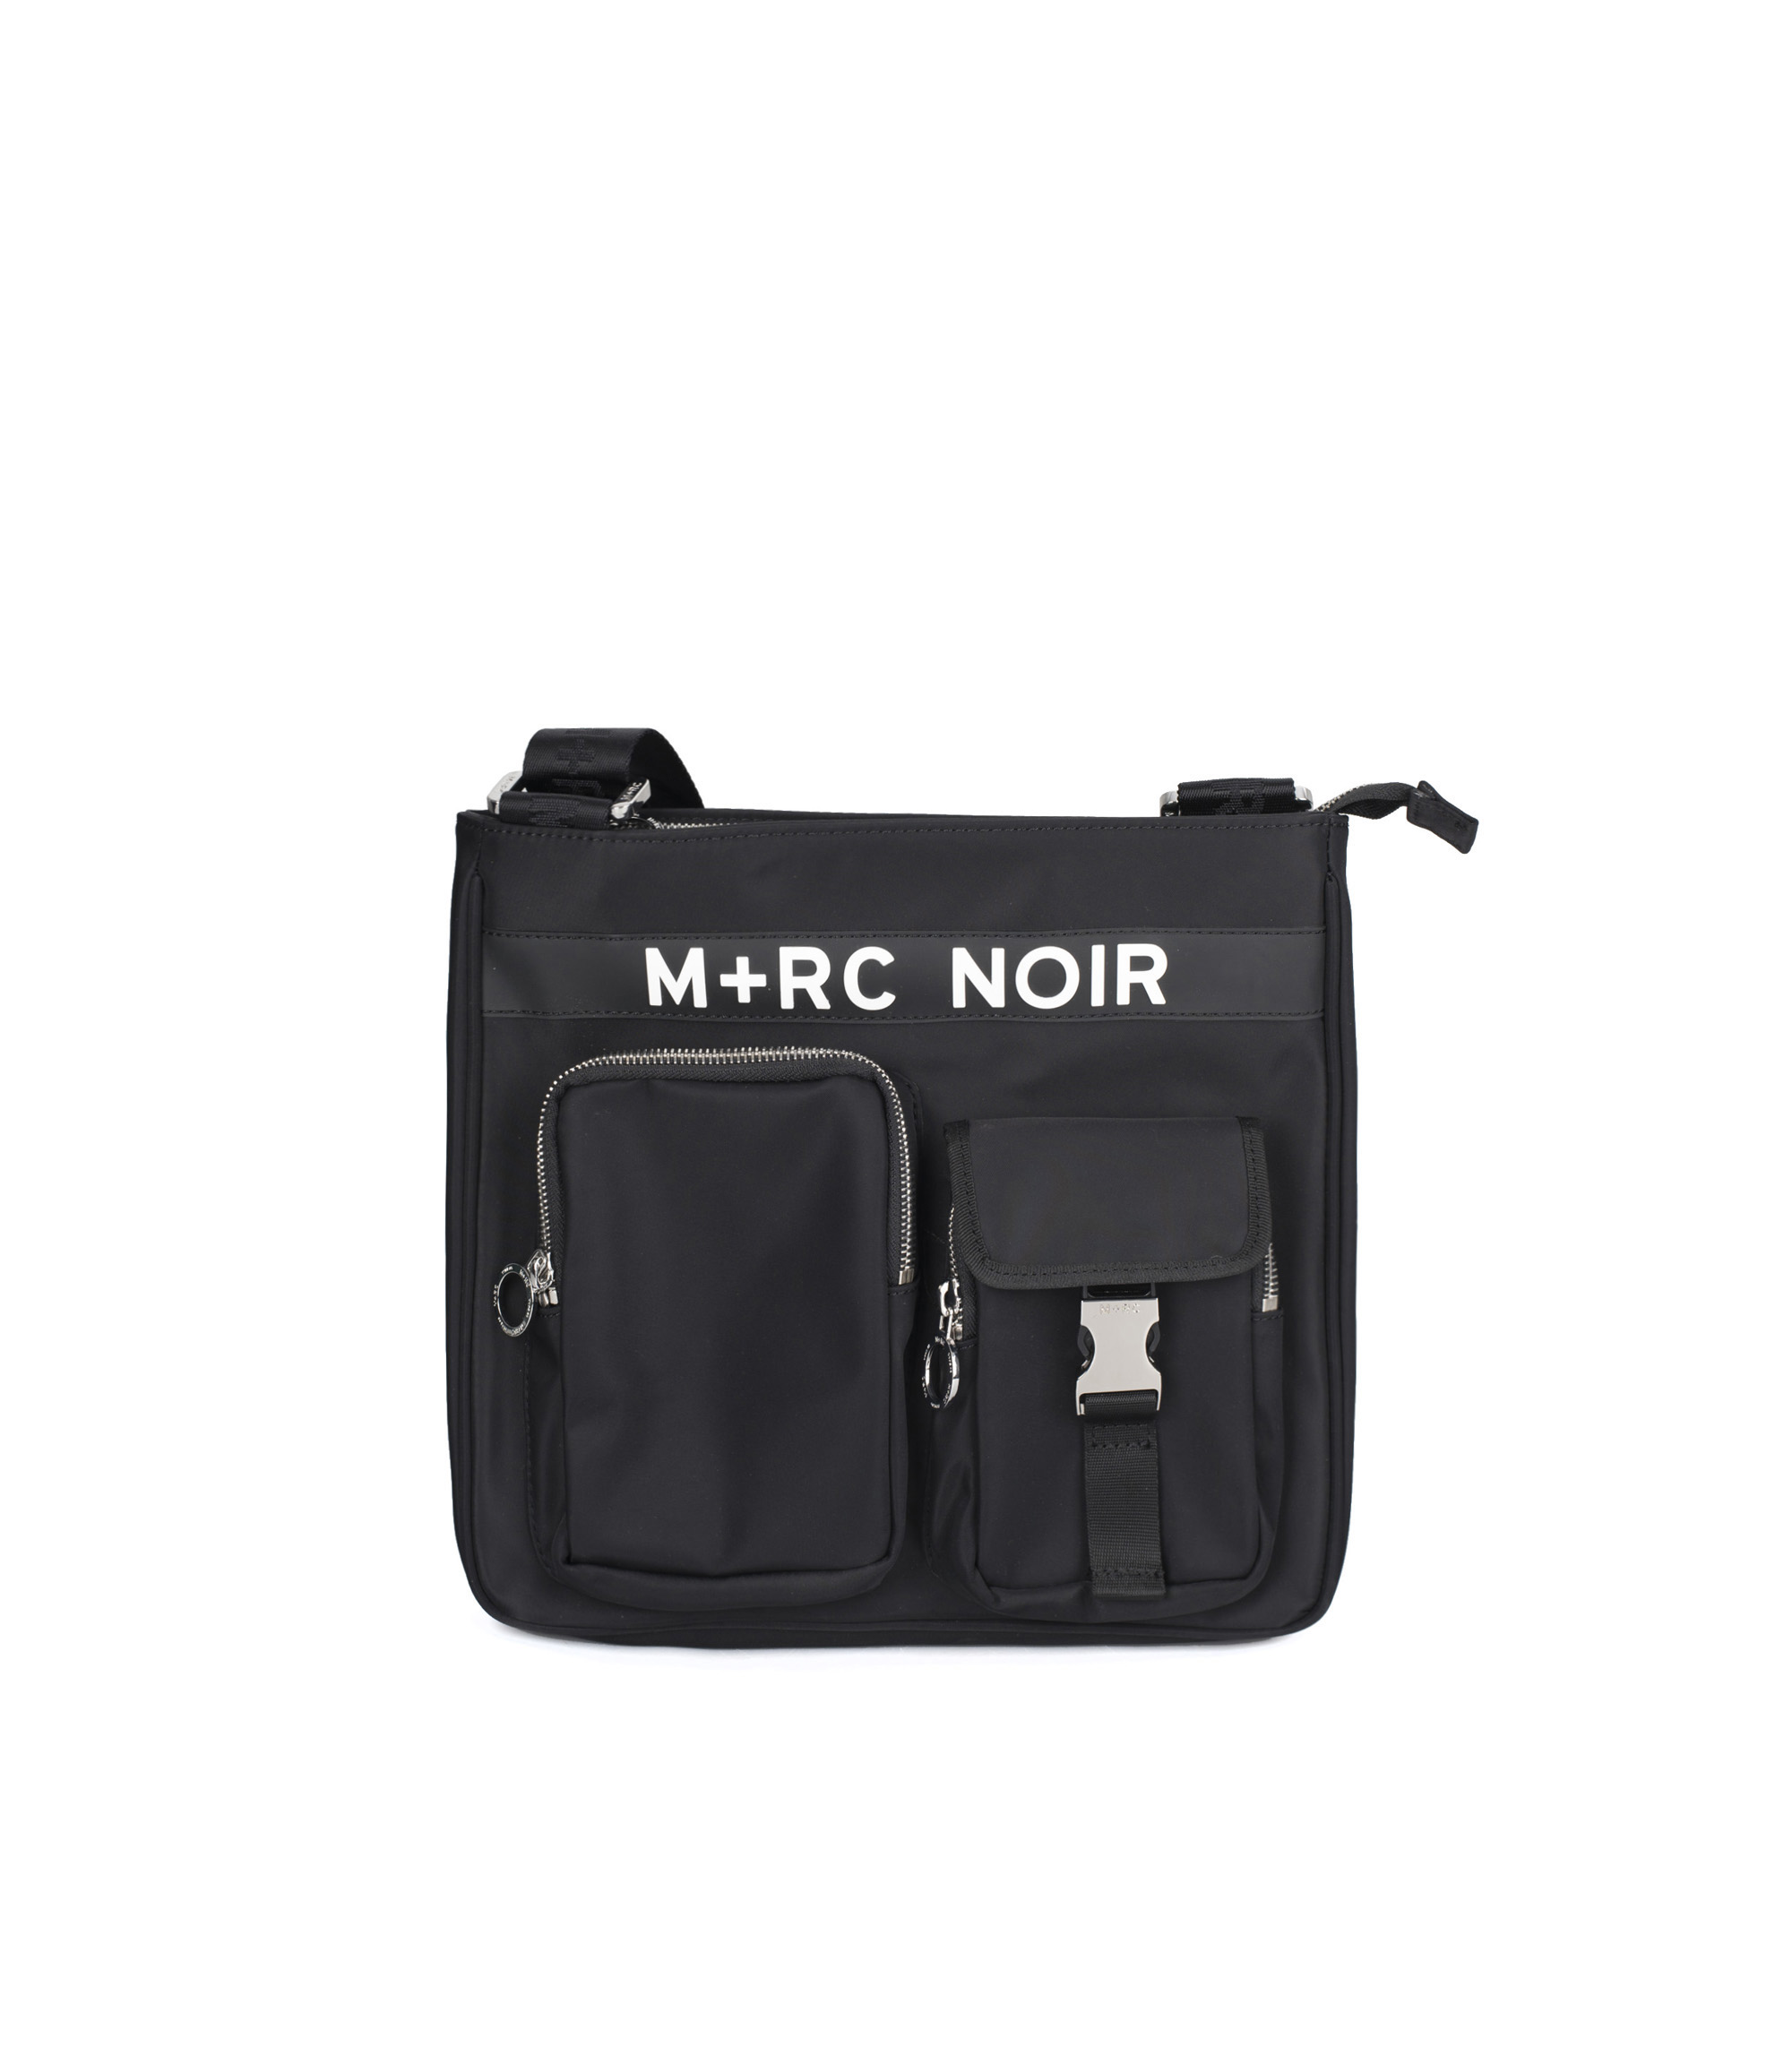 M+RC Noir Messenger Bag Black - руб. - купить в интернет-магазине itk